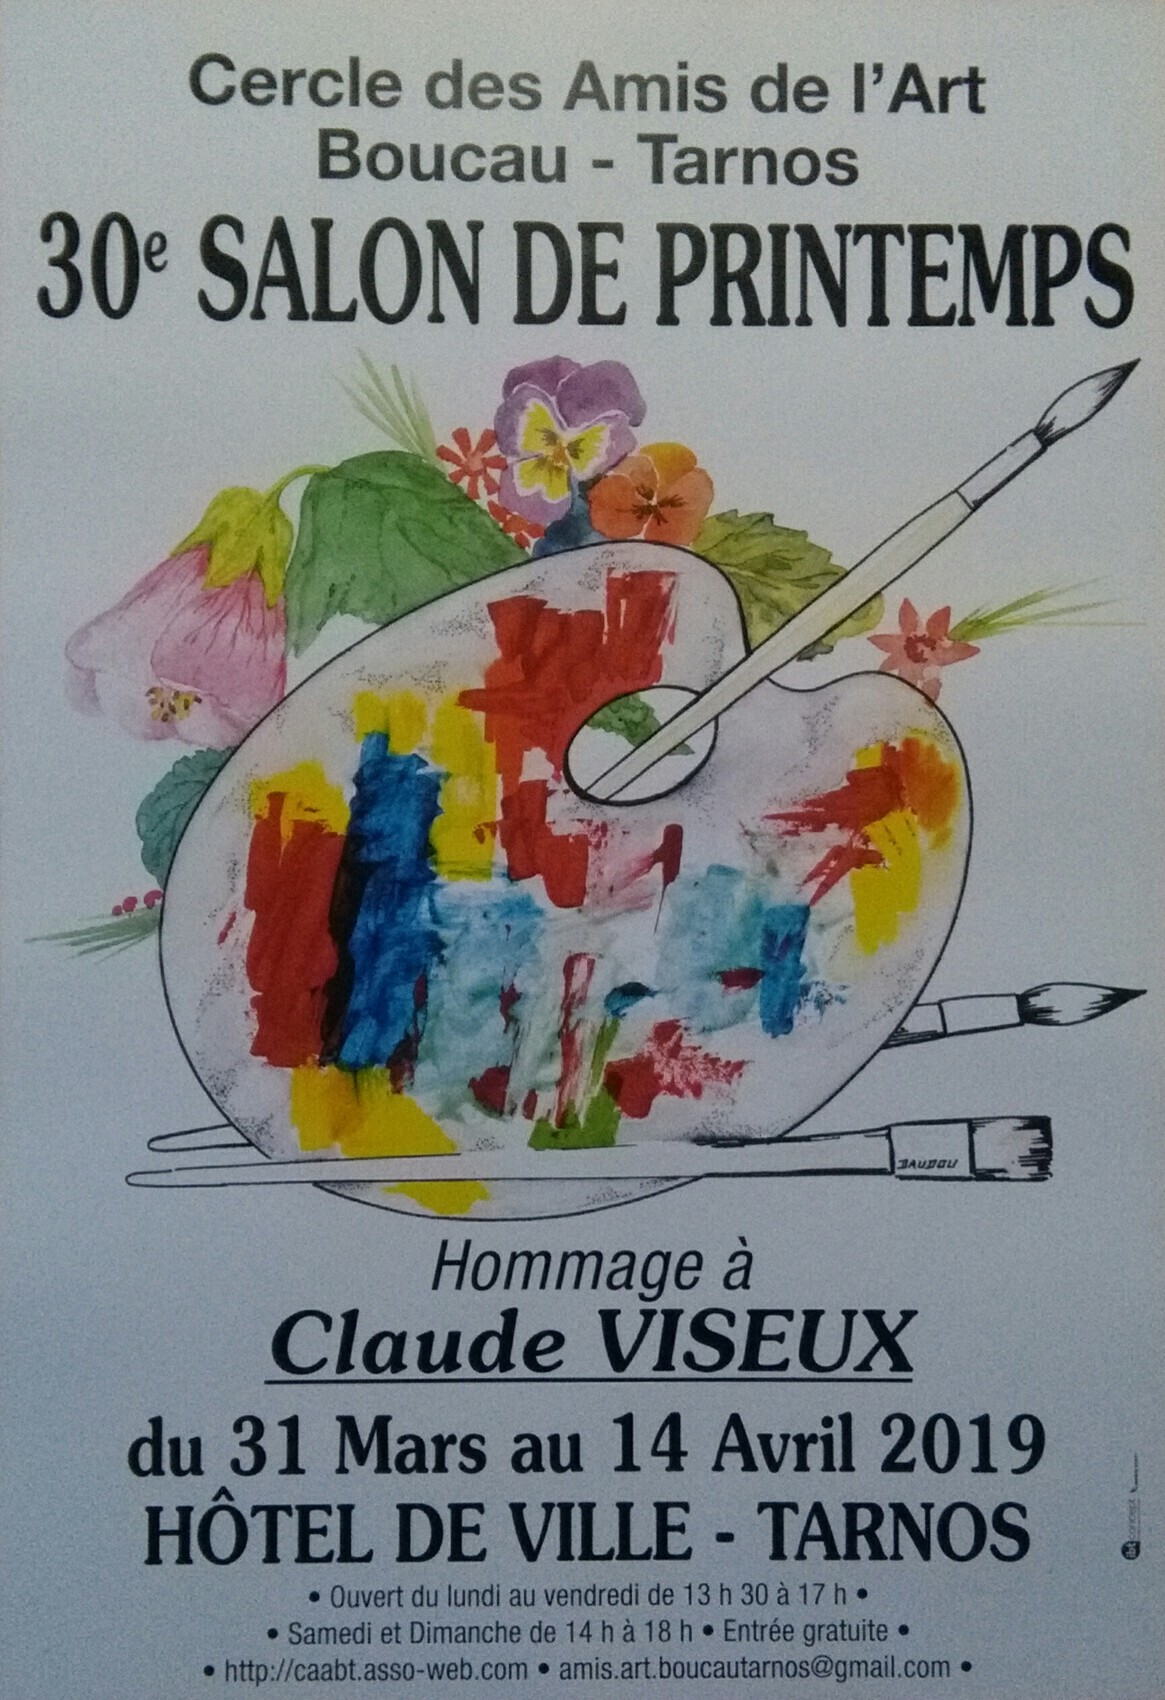 30 ème Salon de Printemps